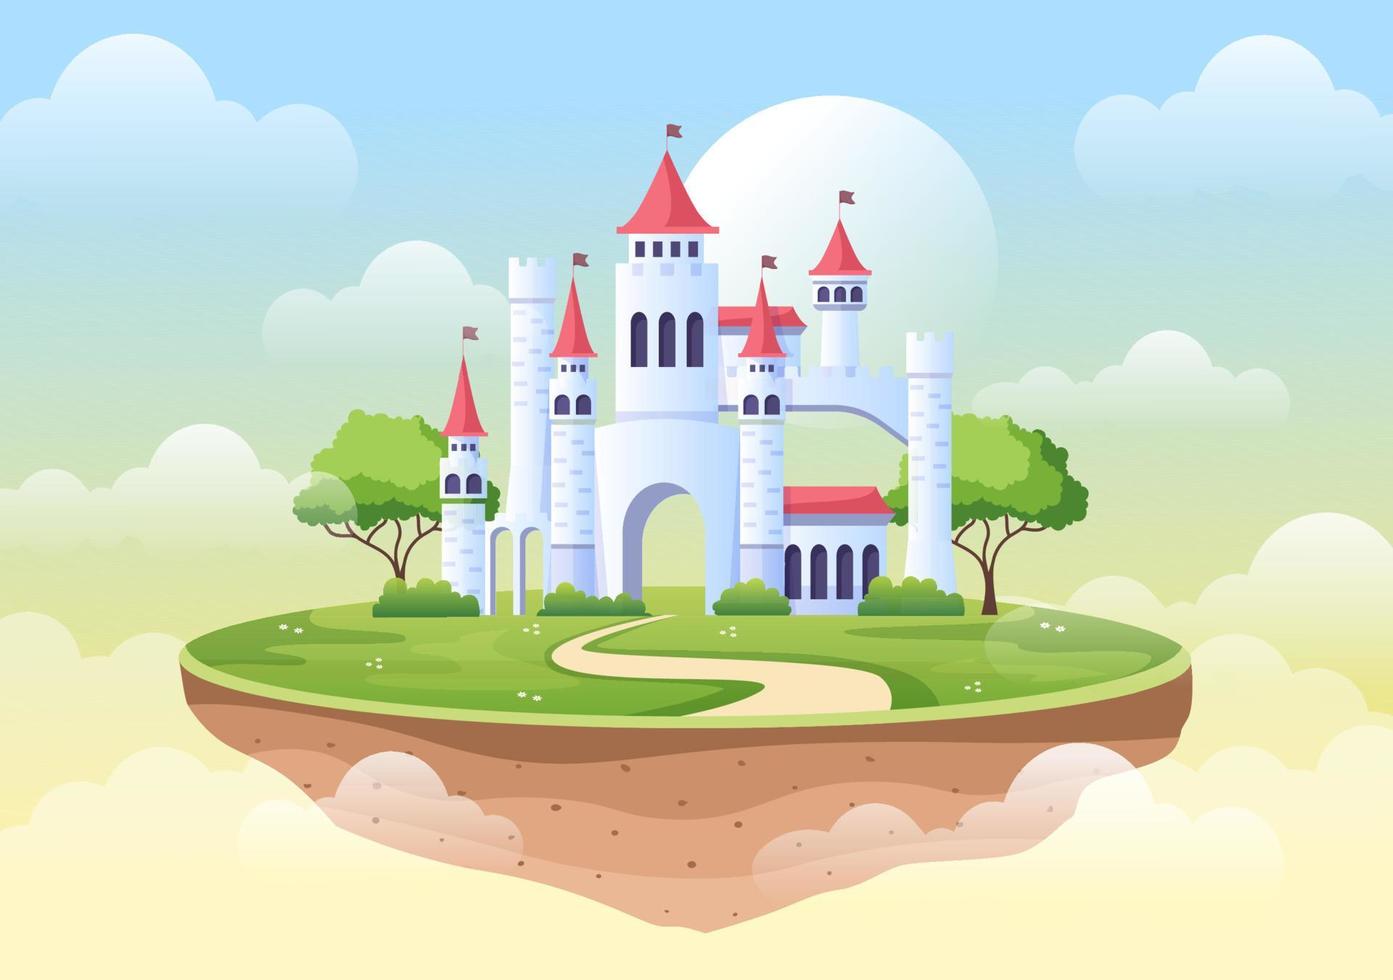 kasteel met majestueuze paleisarchitectuur en sprookjesachtig boslandschap in cartoon vlakke stijlillustratie vector